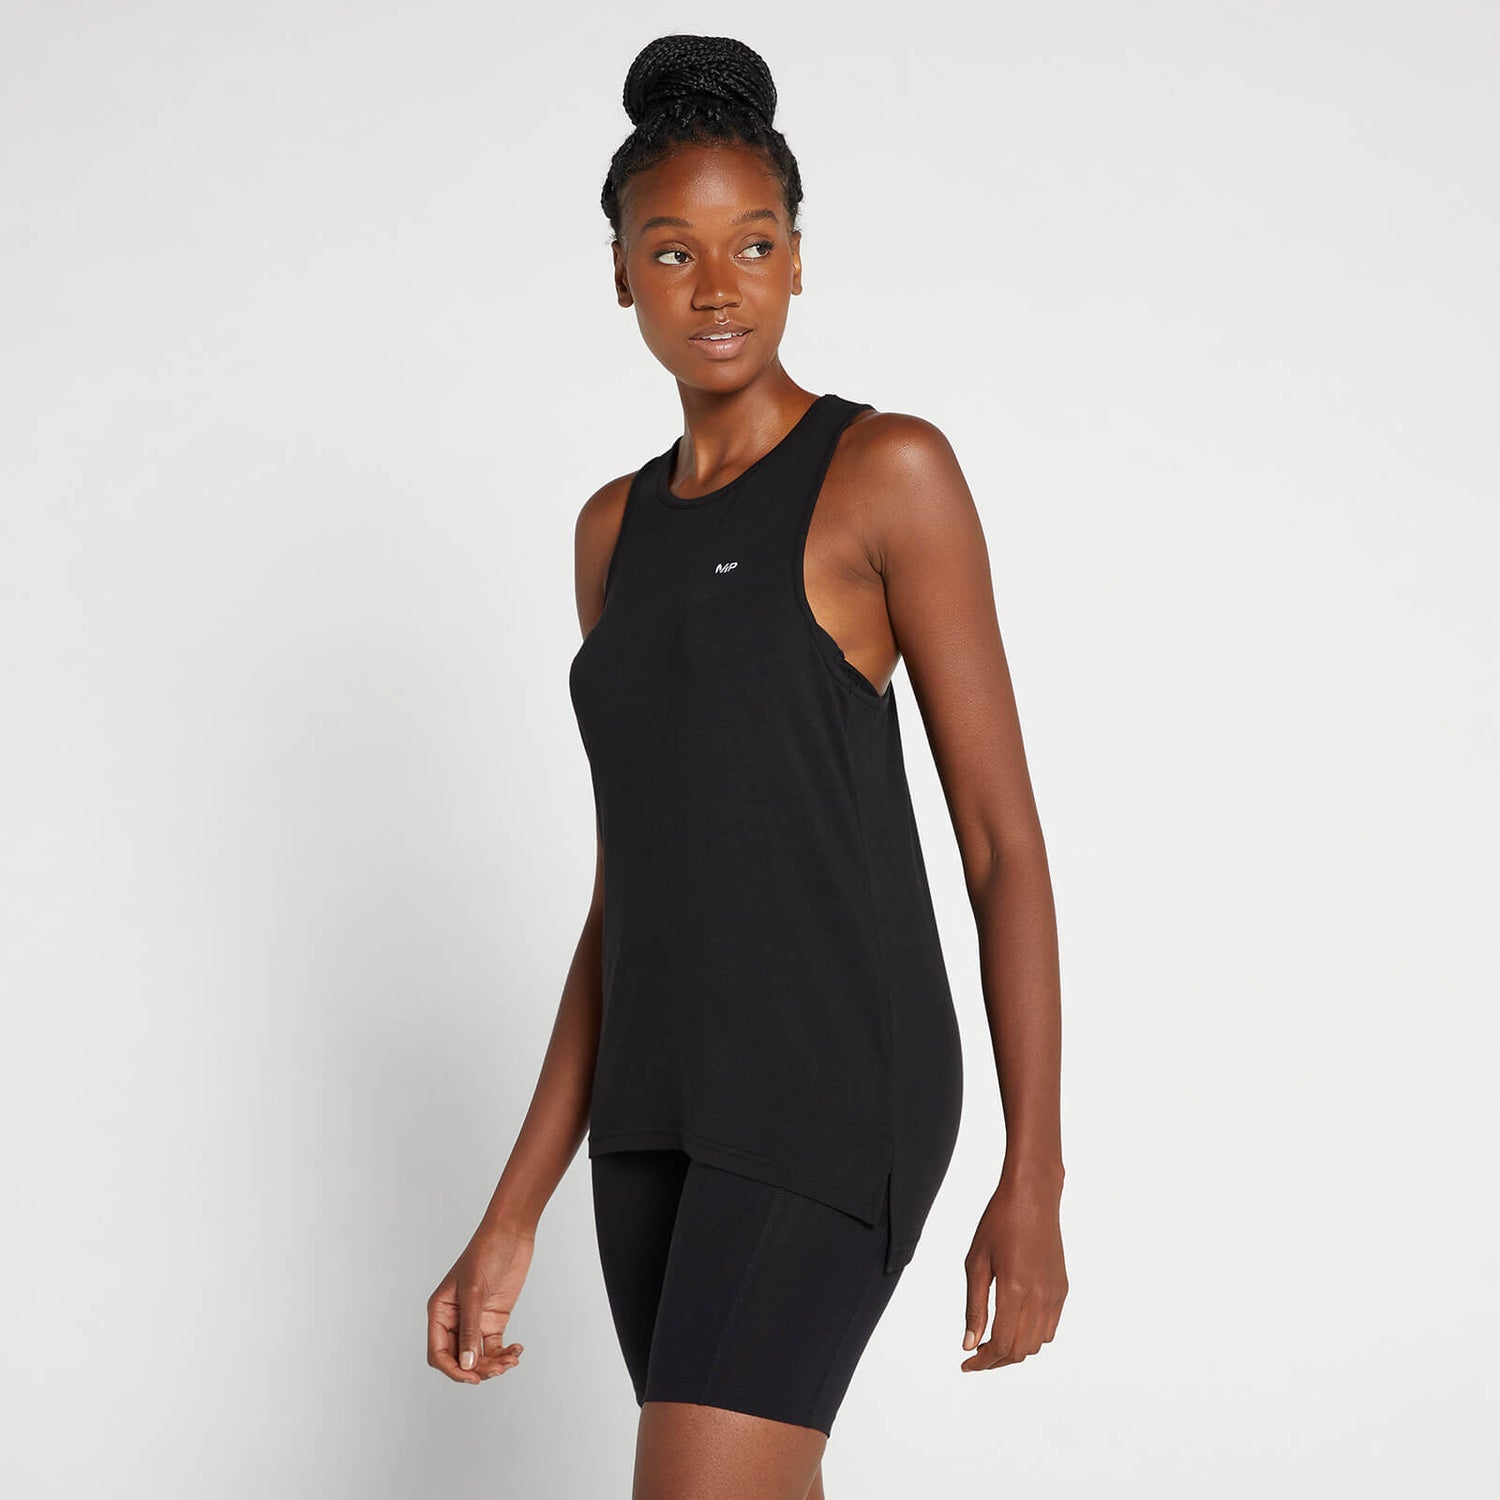 Camiseta sin mangas con espalda nadadora Composure para mujer de MP - Negro - XXS